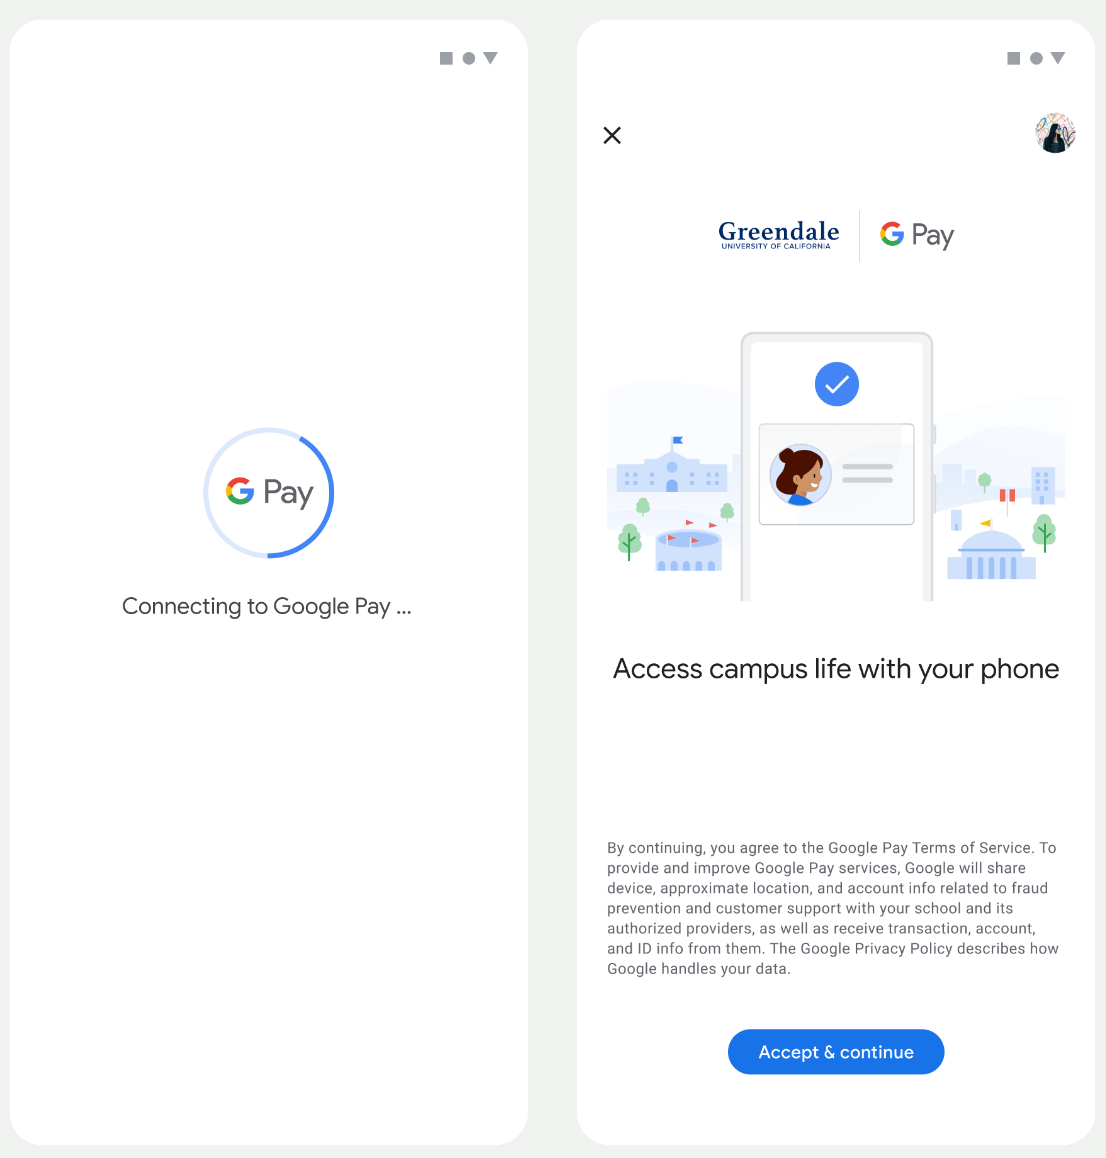 첫 번째 화면에서 앱이 Google 월렛에 연결됩니다. 두 번째 화면에서 사용자는 서비스 약관에 동의하고 계속 진행합니다.